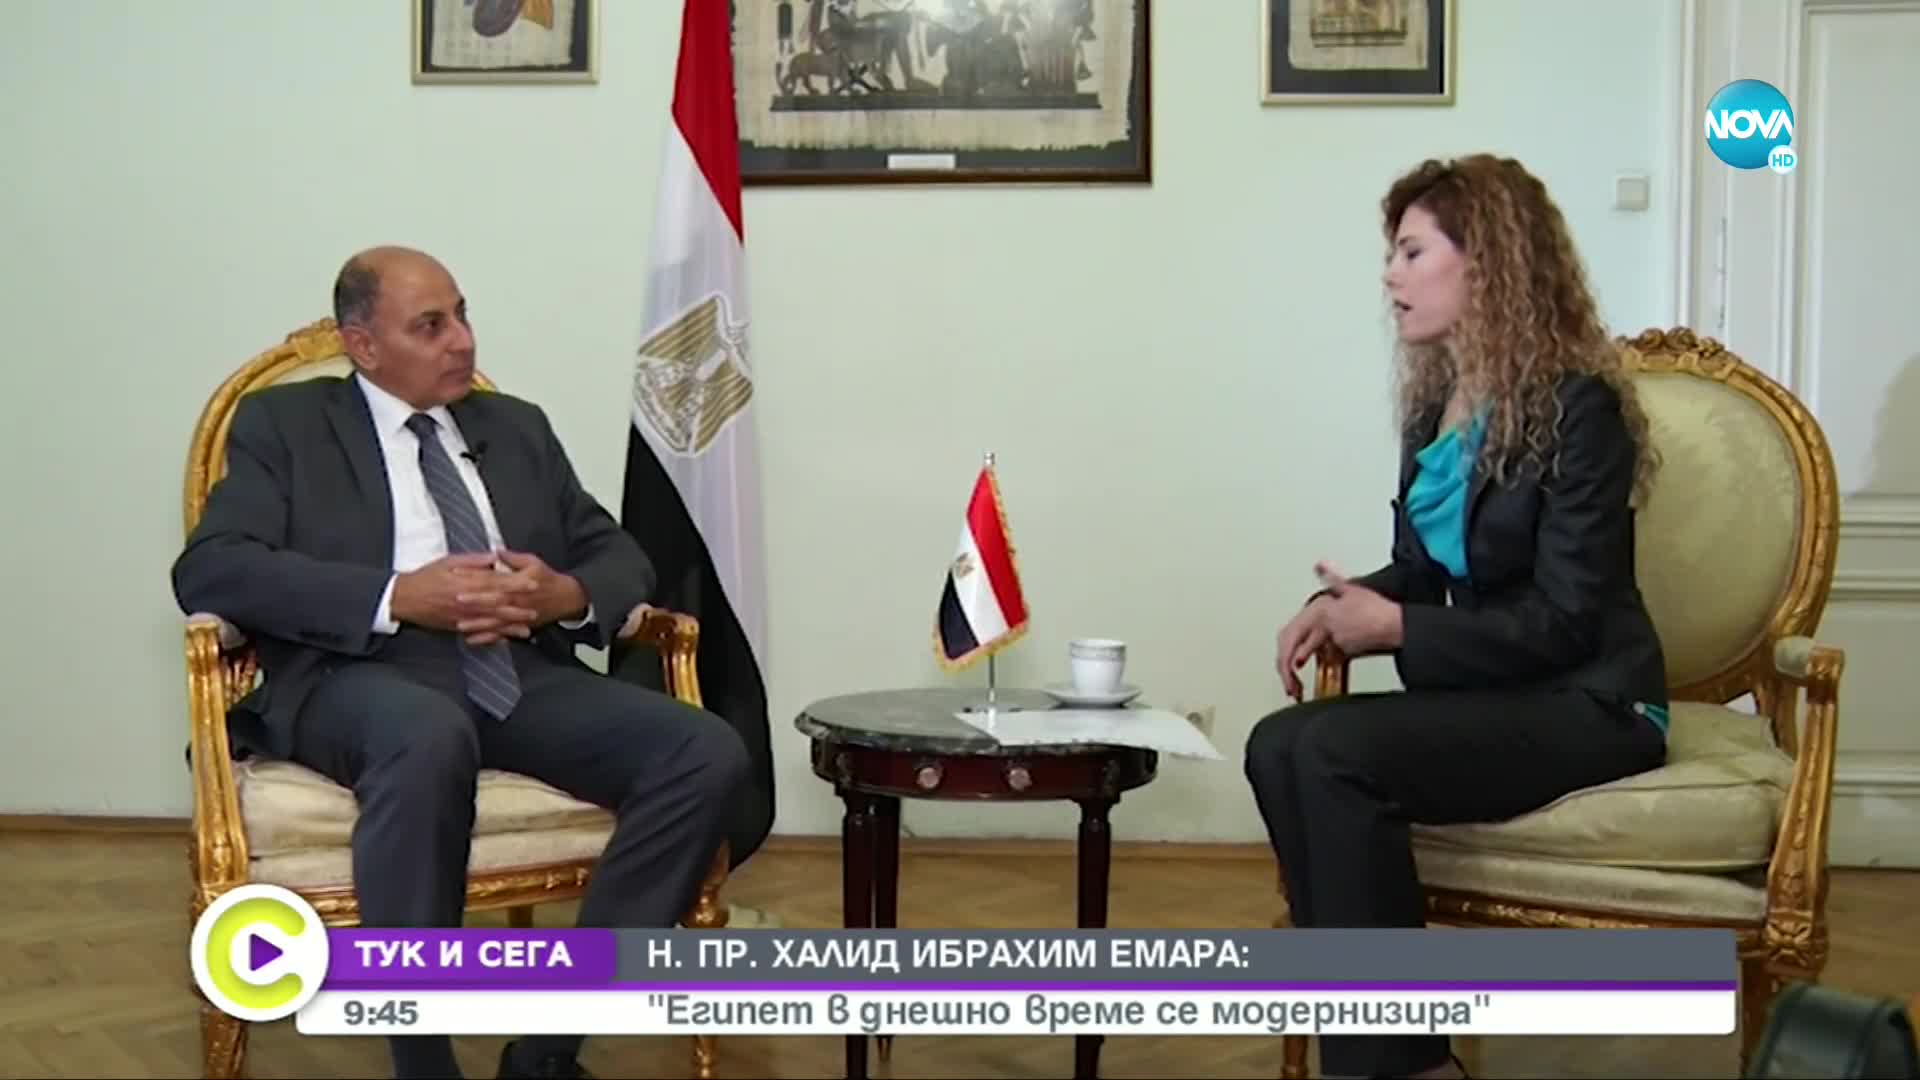 "ТУК И СЕГА": Посланикът на Египет у нас – за дипломацията, политиката и туризма